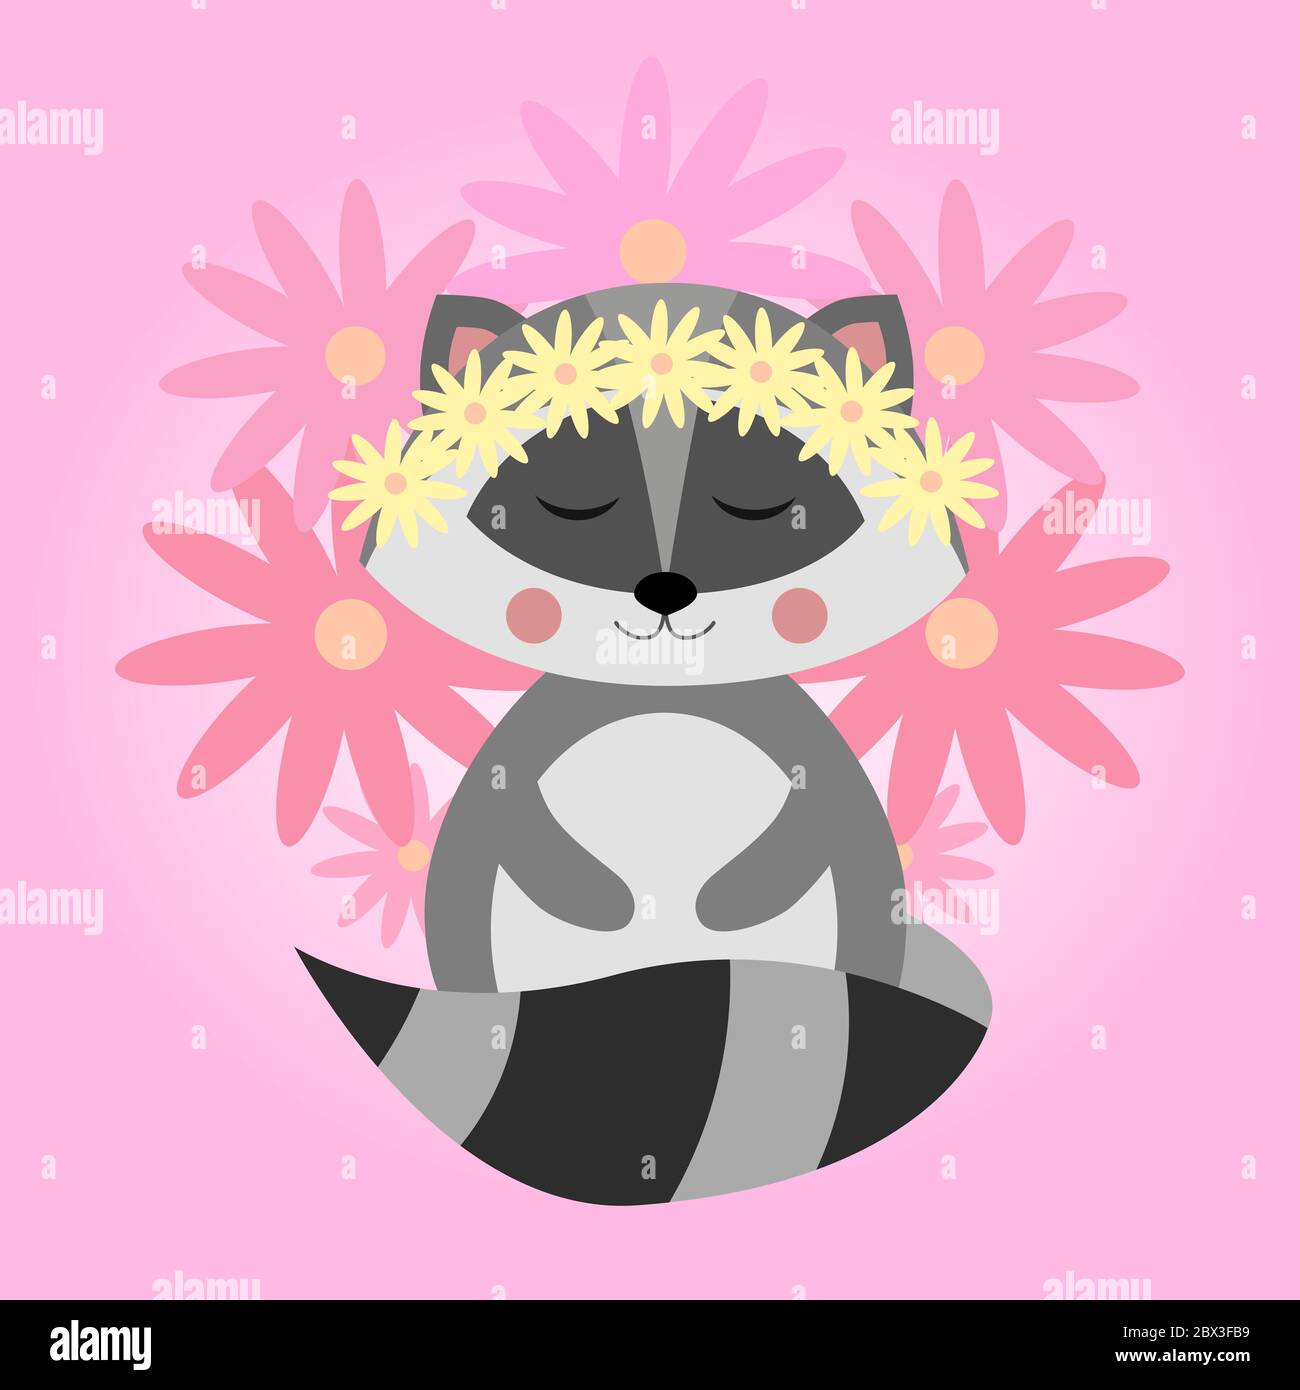 Simpatico raccoon con fiori. Procione nordamericano, mammifero nativo. Disegno animale di cartone animato. Immagine vettoriale piatta isolata su sfondo rosa. Illustrazione Vettoriale